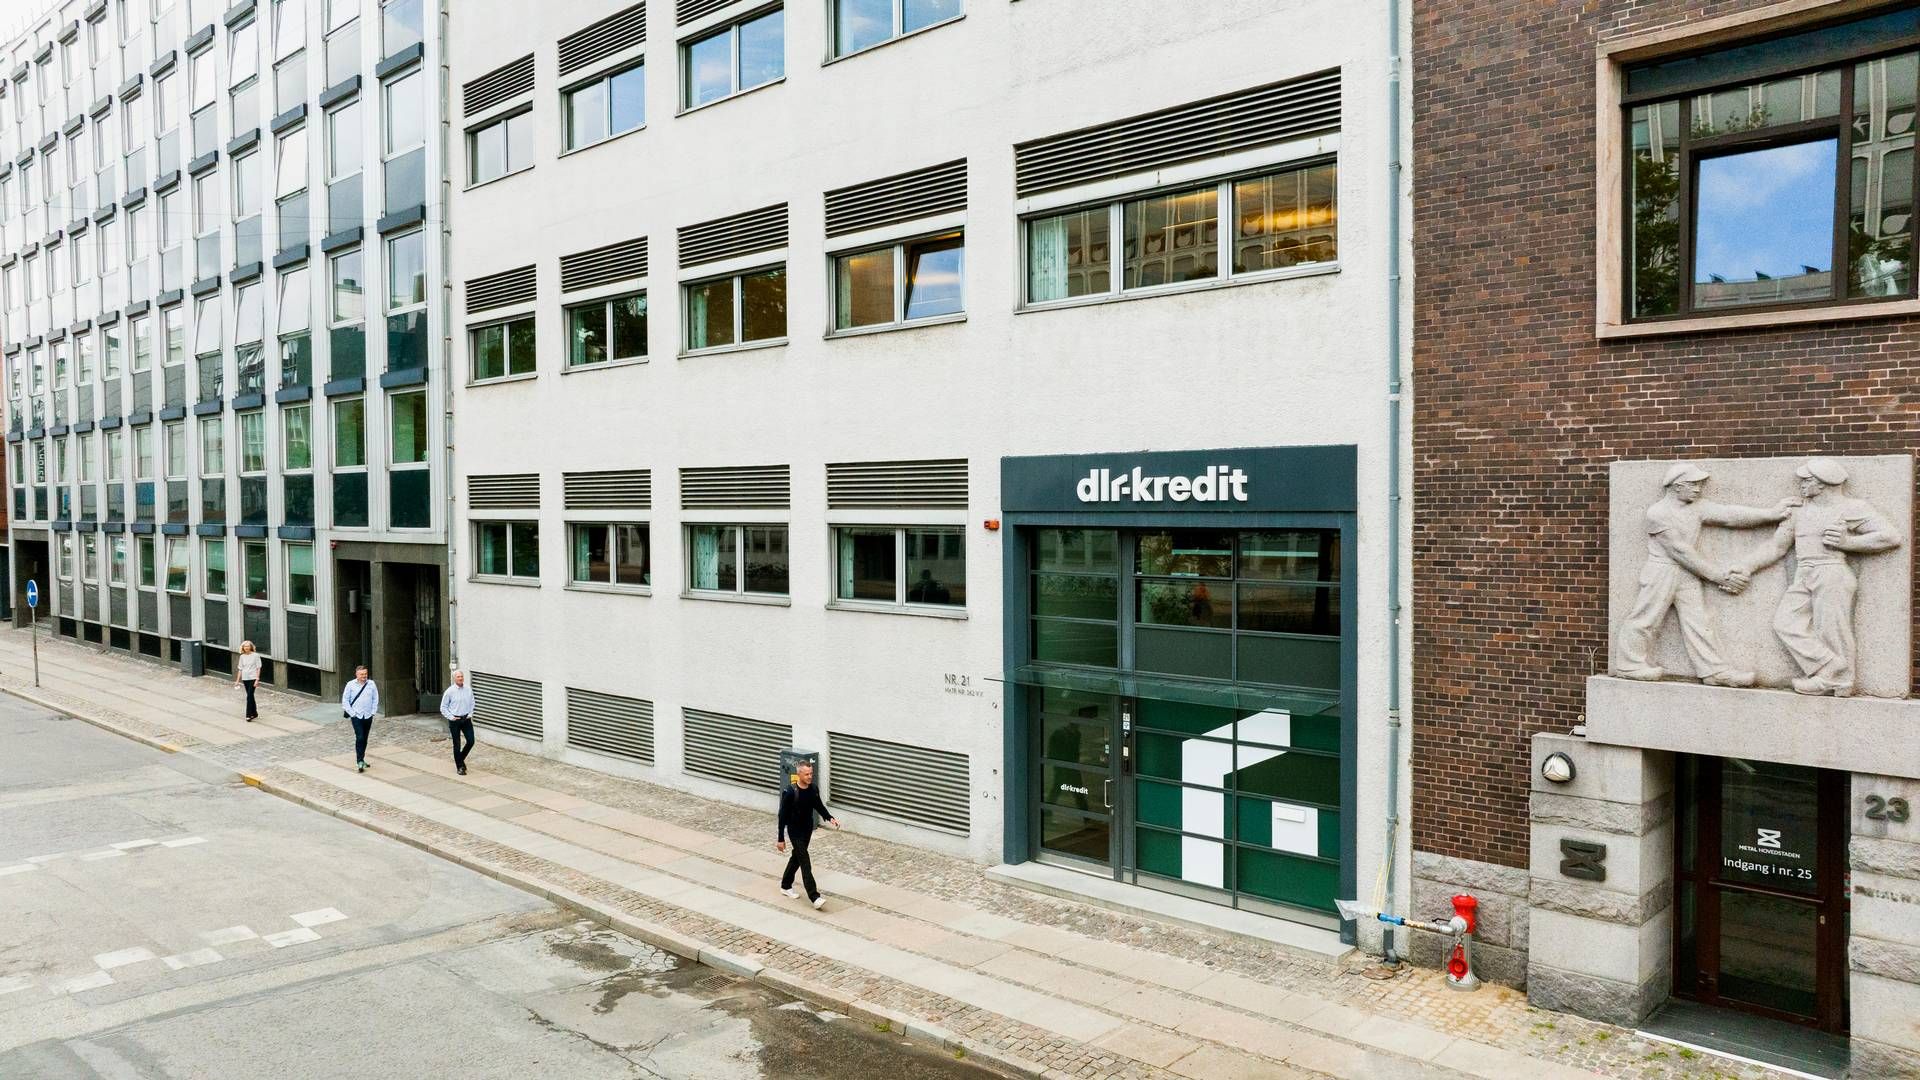 DLR Kredit har til huse i København og distribuerer realkreditlån gennem en række pengeinstitutter rundt om i landet. | Foto: Pr/dlr Kredit